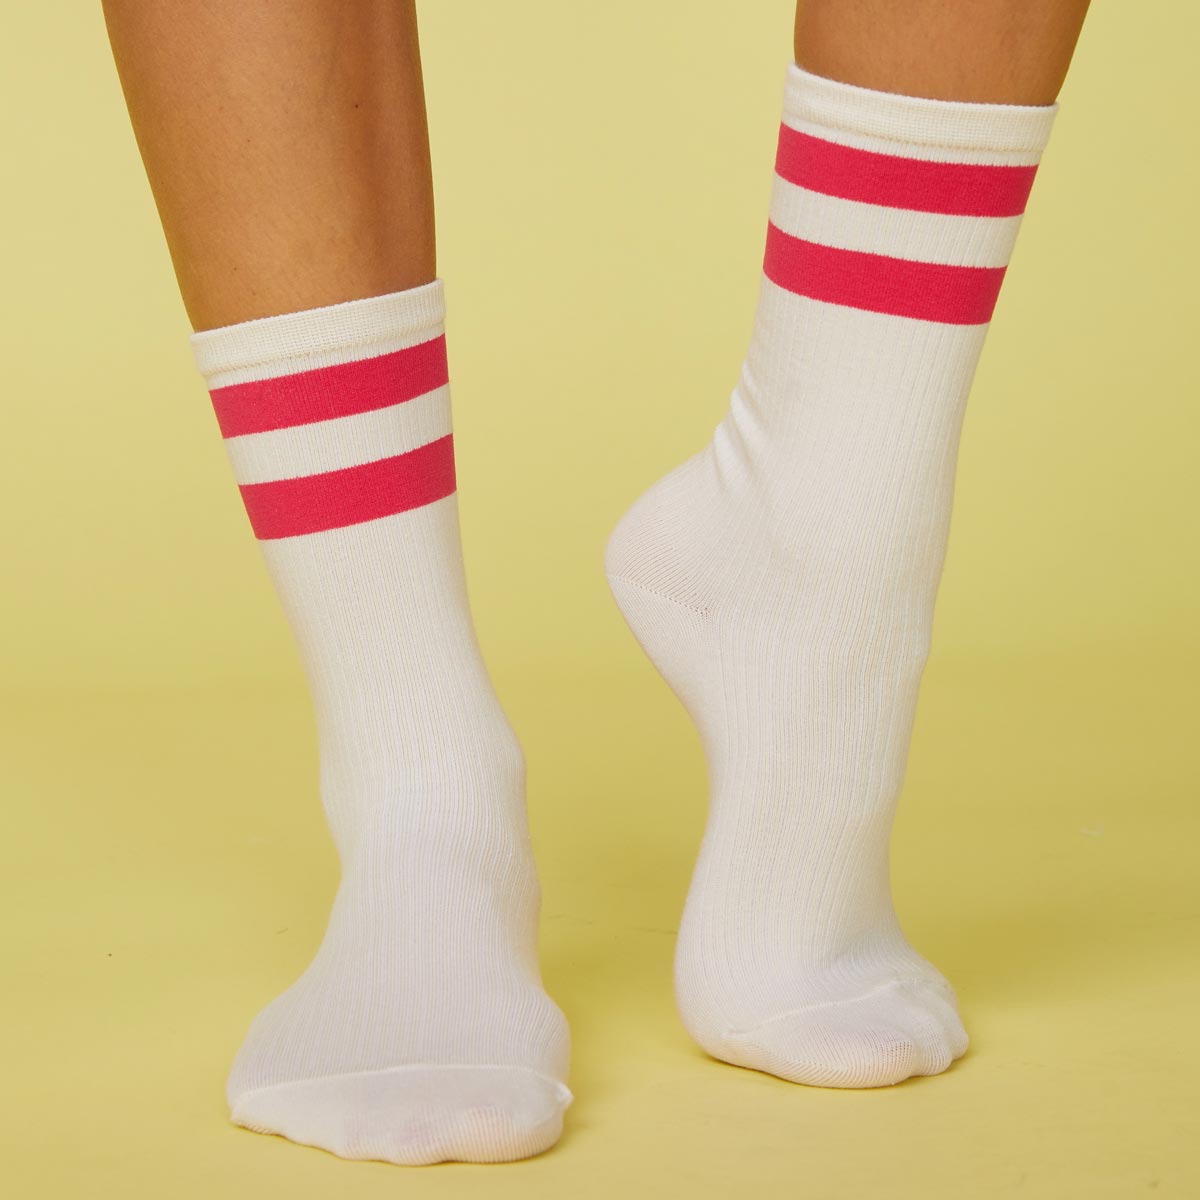 Front view of model's feet wearing the stripe socks in raspberry.